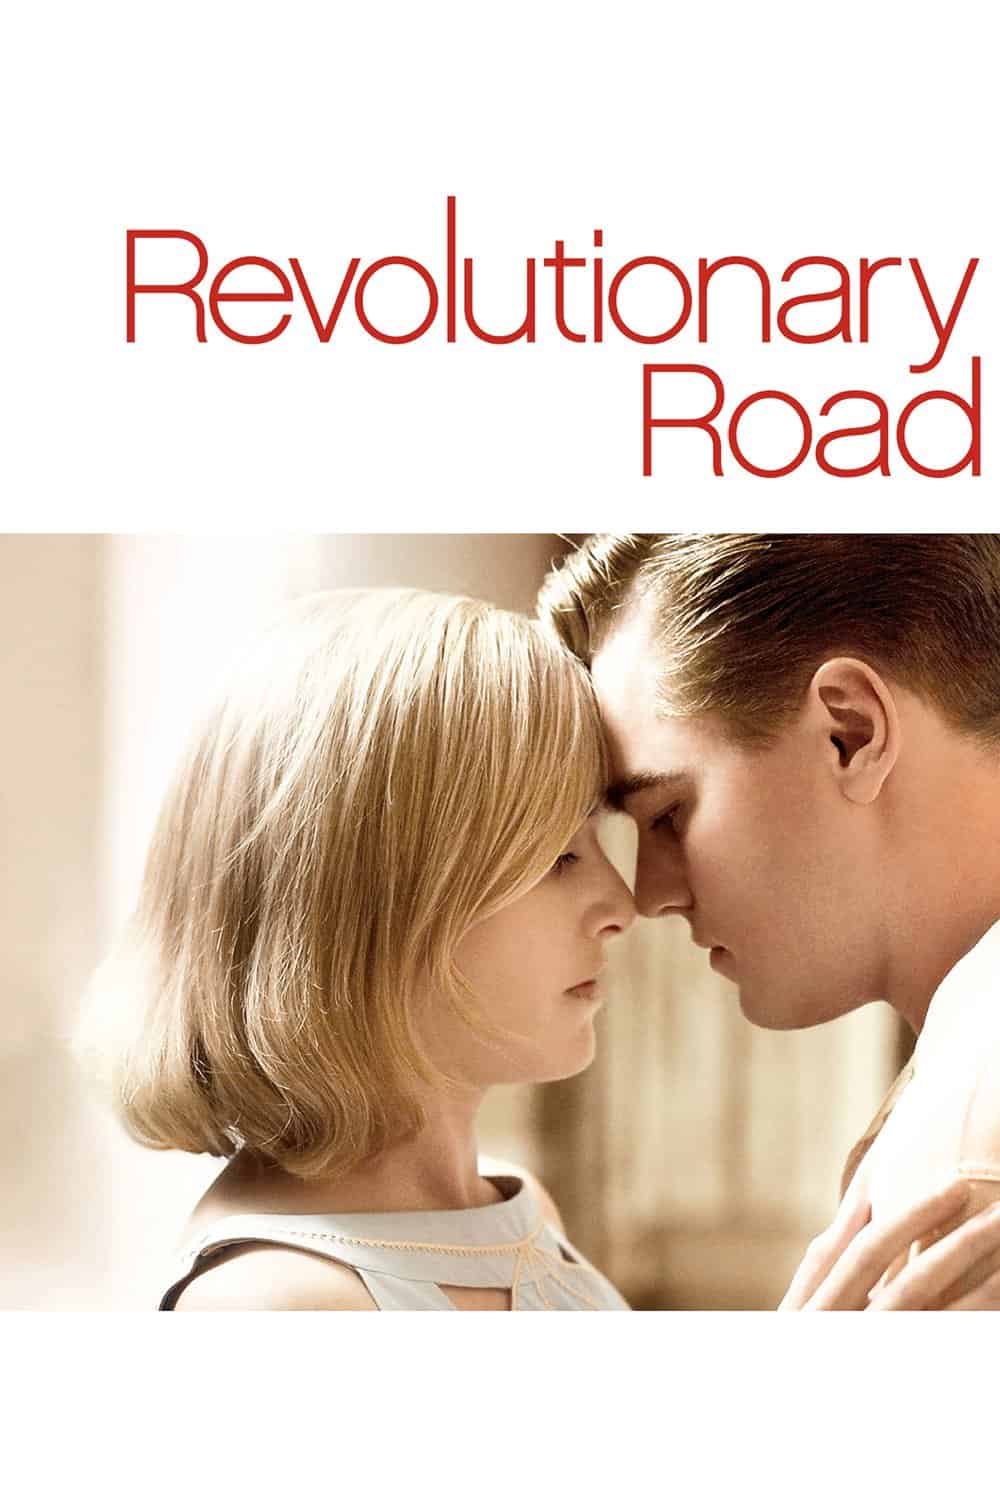 Revolutionary Road, 2008 